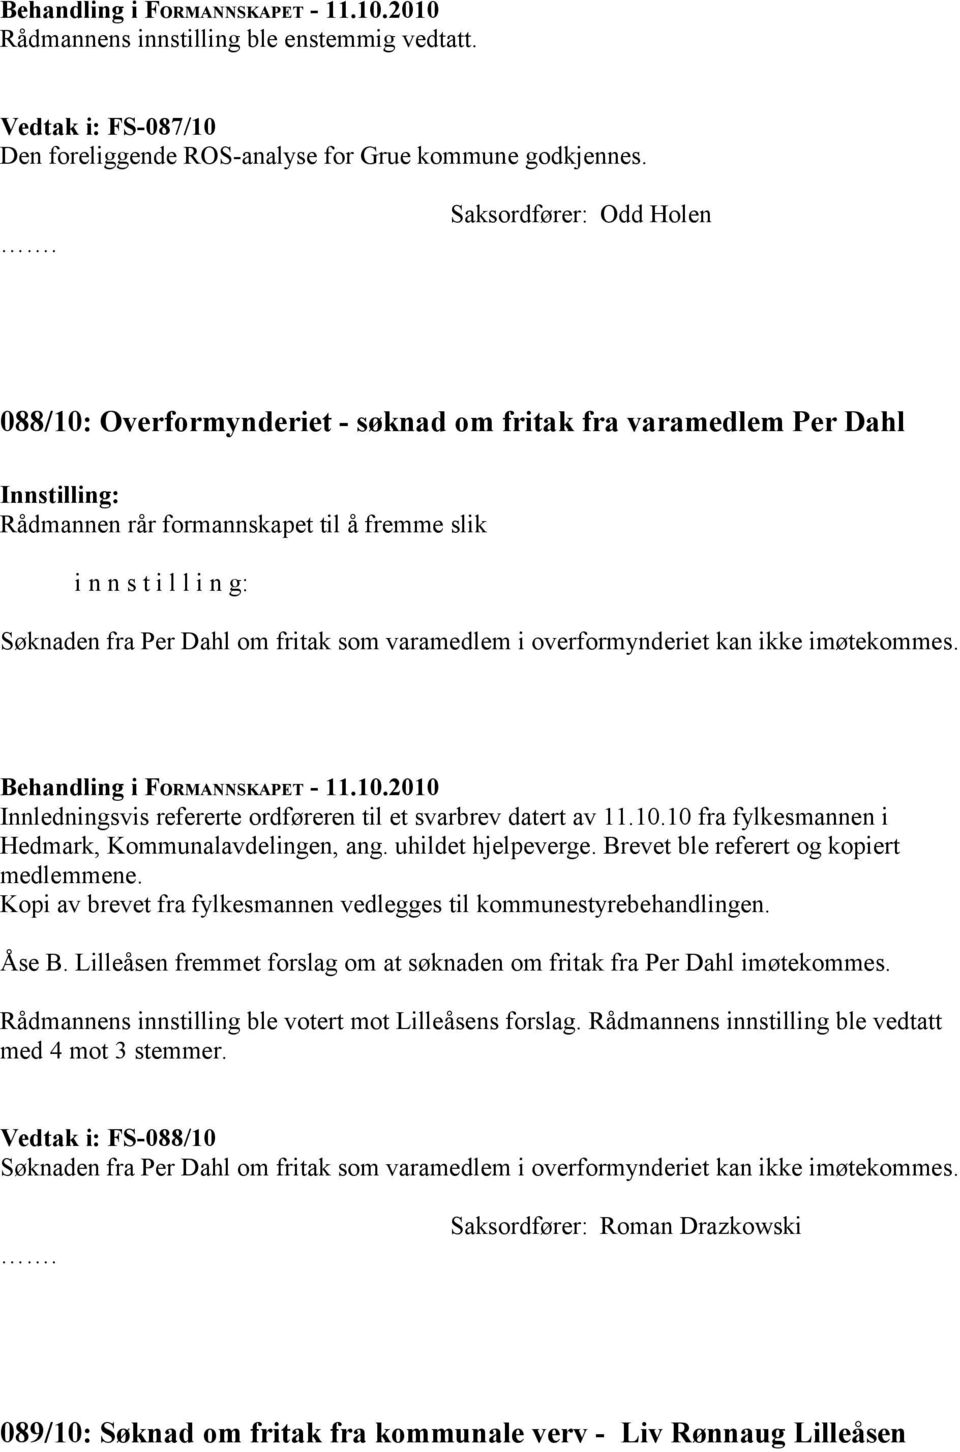 Innledningsvis refererte ordføreren til et svarbrev datert av 11.10.10 fra fylkesmannen i Hedmark, Kommunalavdelingen, ang. uhildet hjelpeverge. Brevet ble referert og kopiert medlemmene.